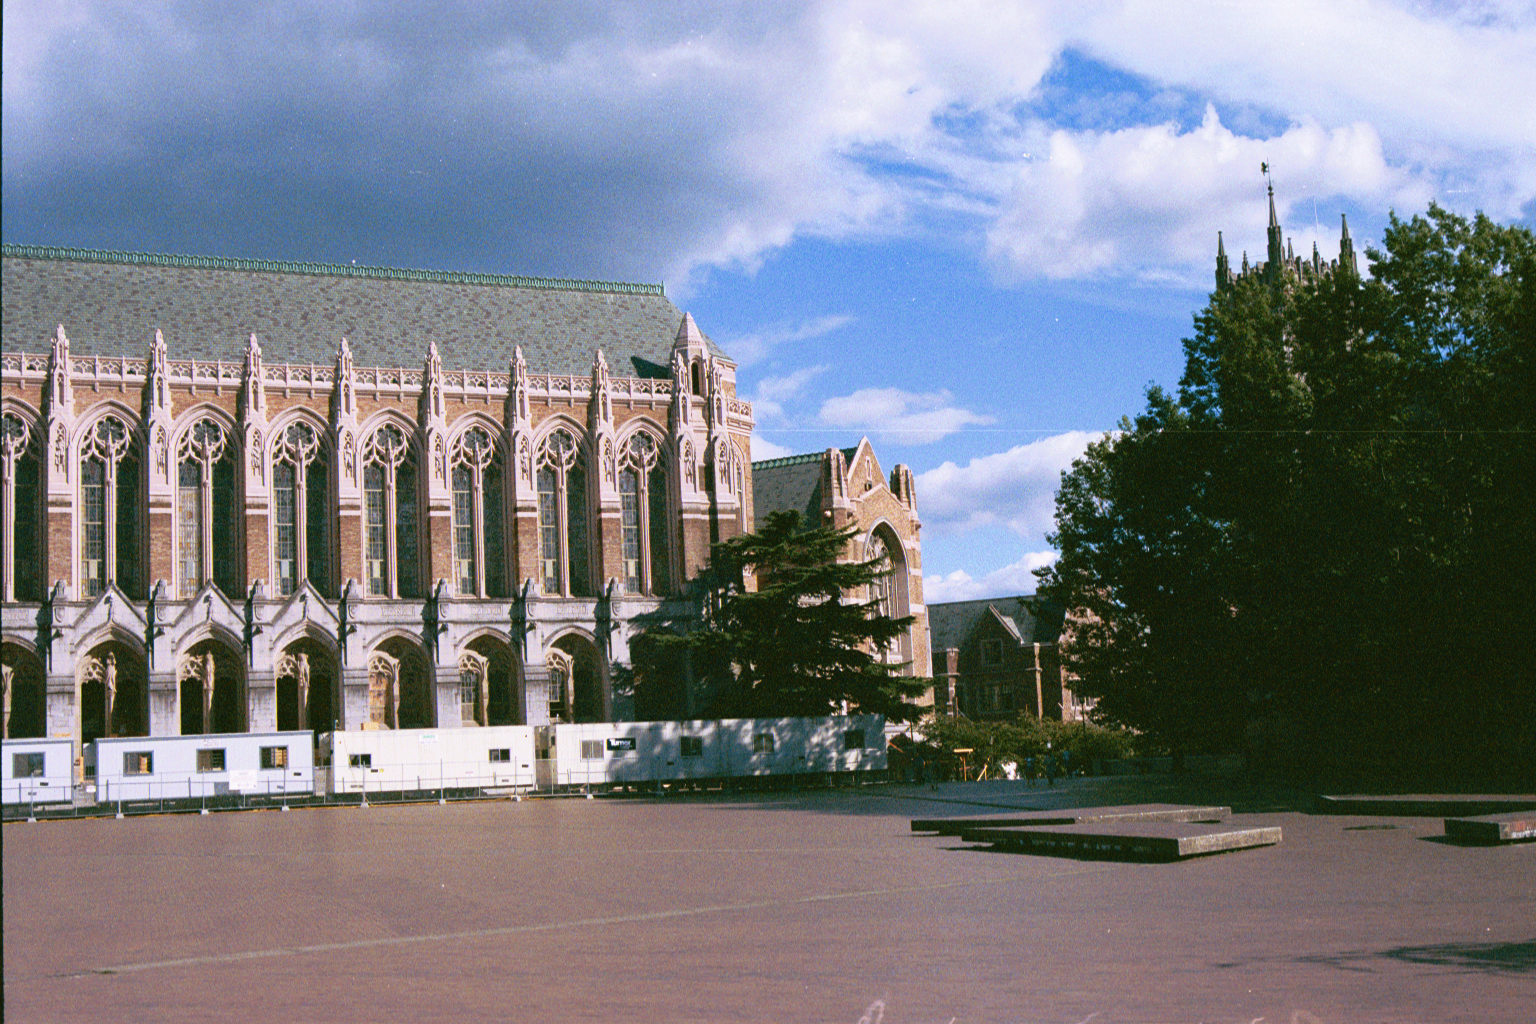 University of Washington Library